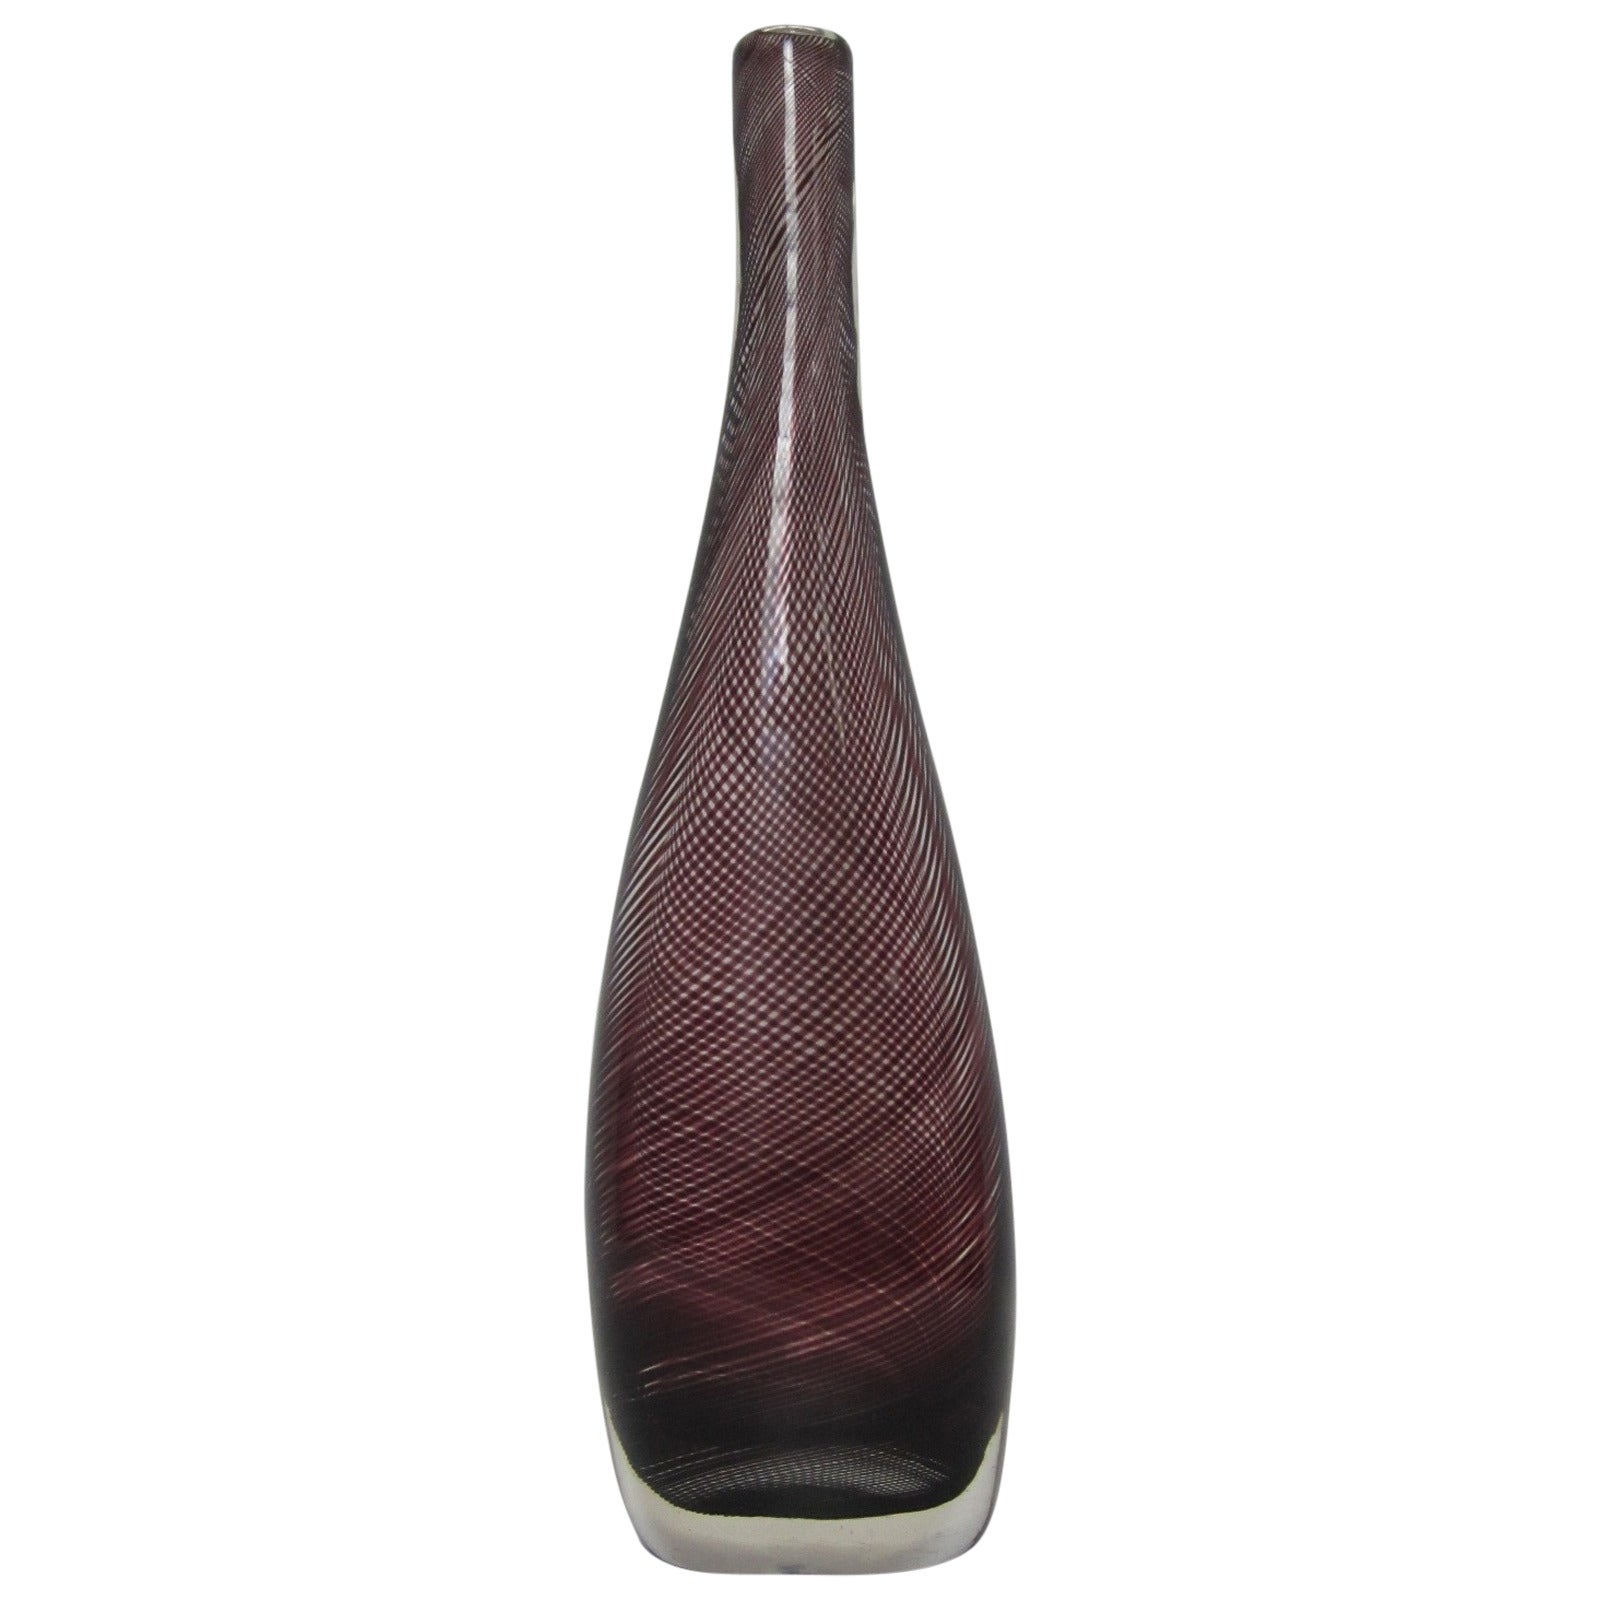 Venini Handblown Murano Glass Vase For Sale